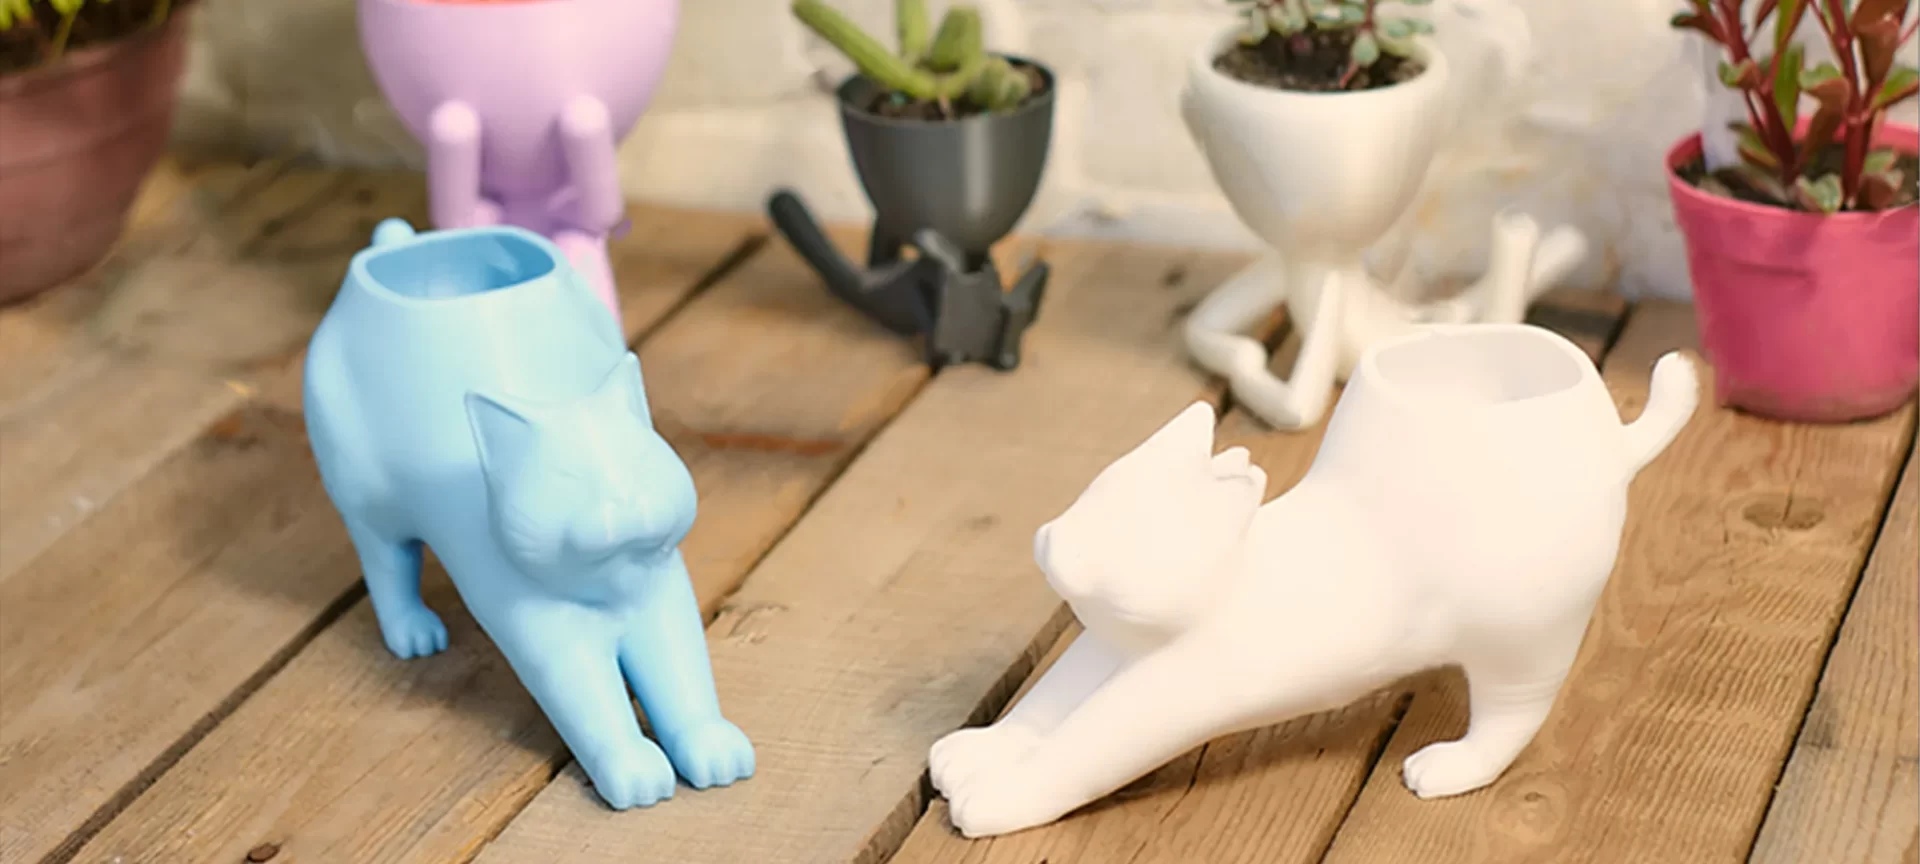 3D printed cat pot